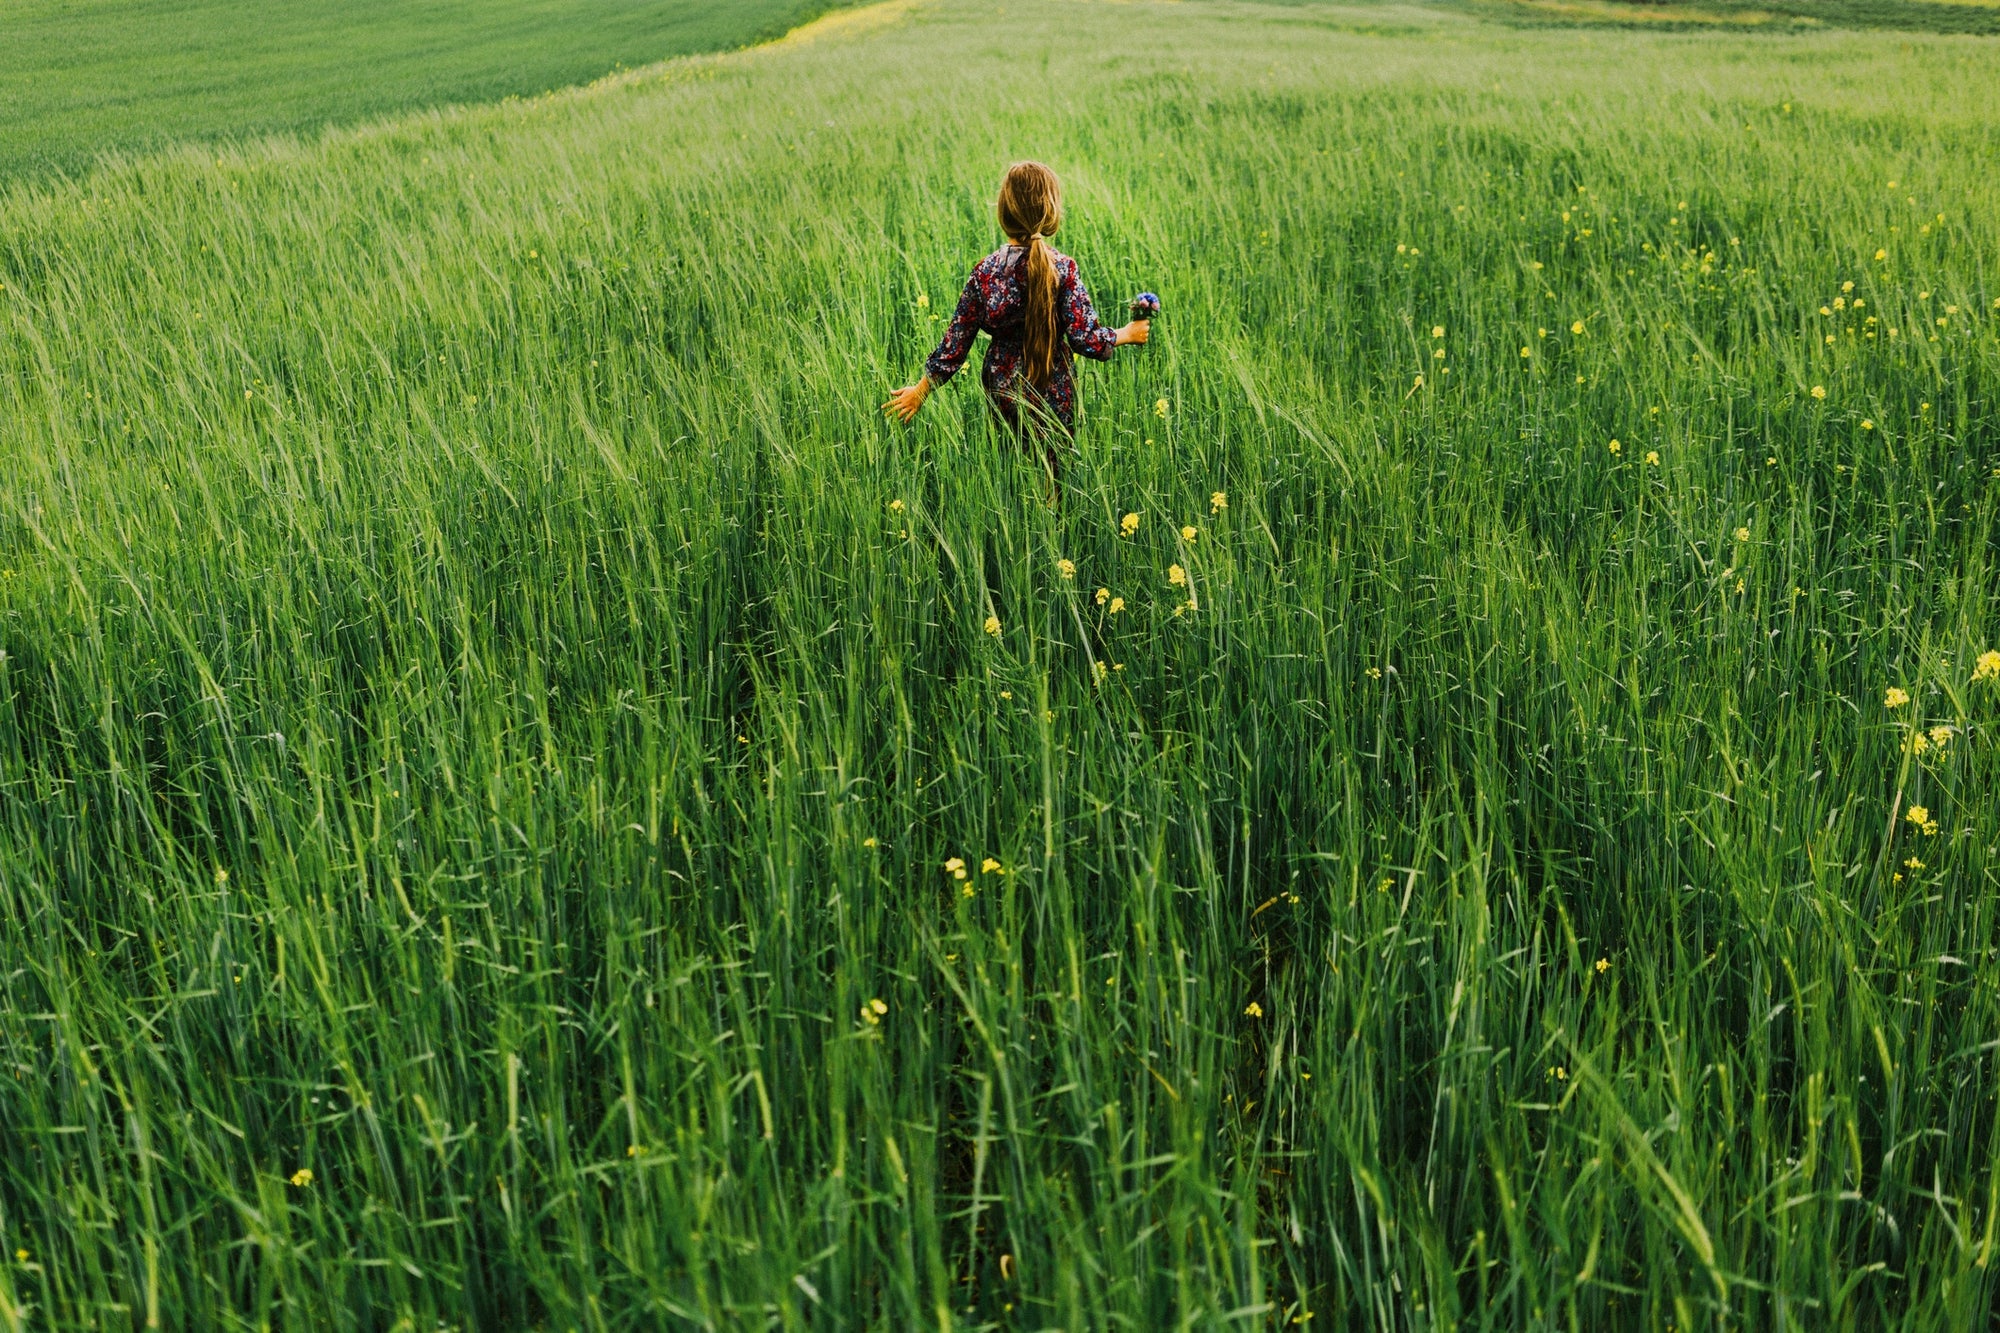 Rear view of a girl walking in field of long grass